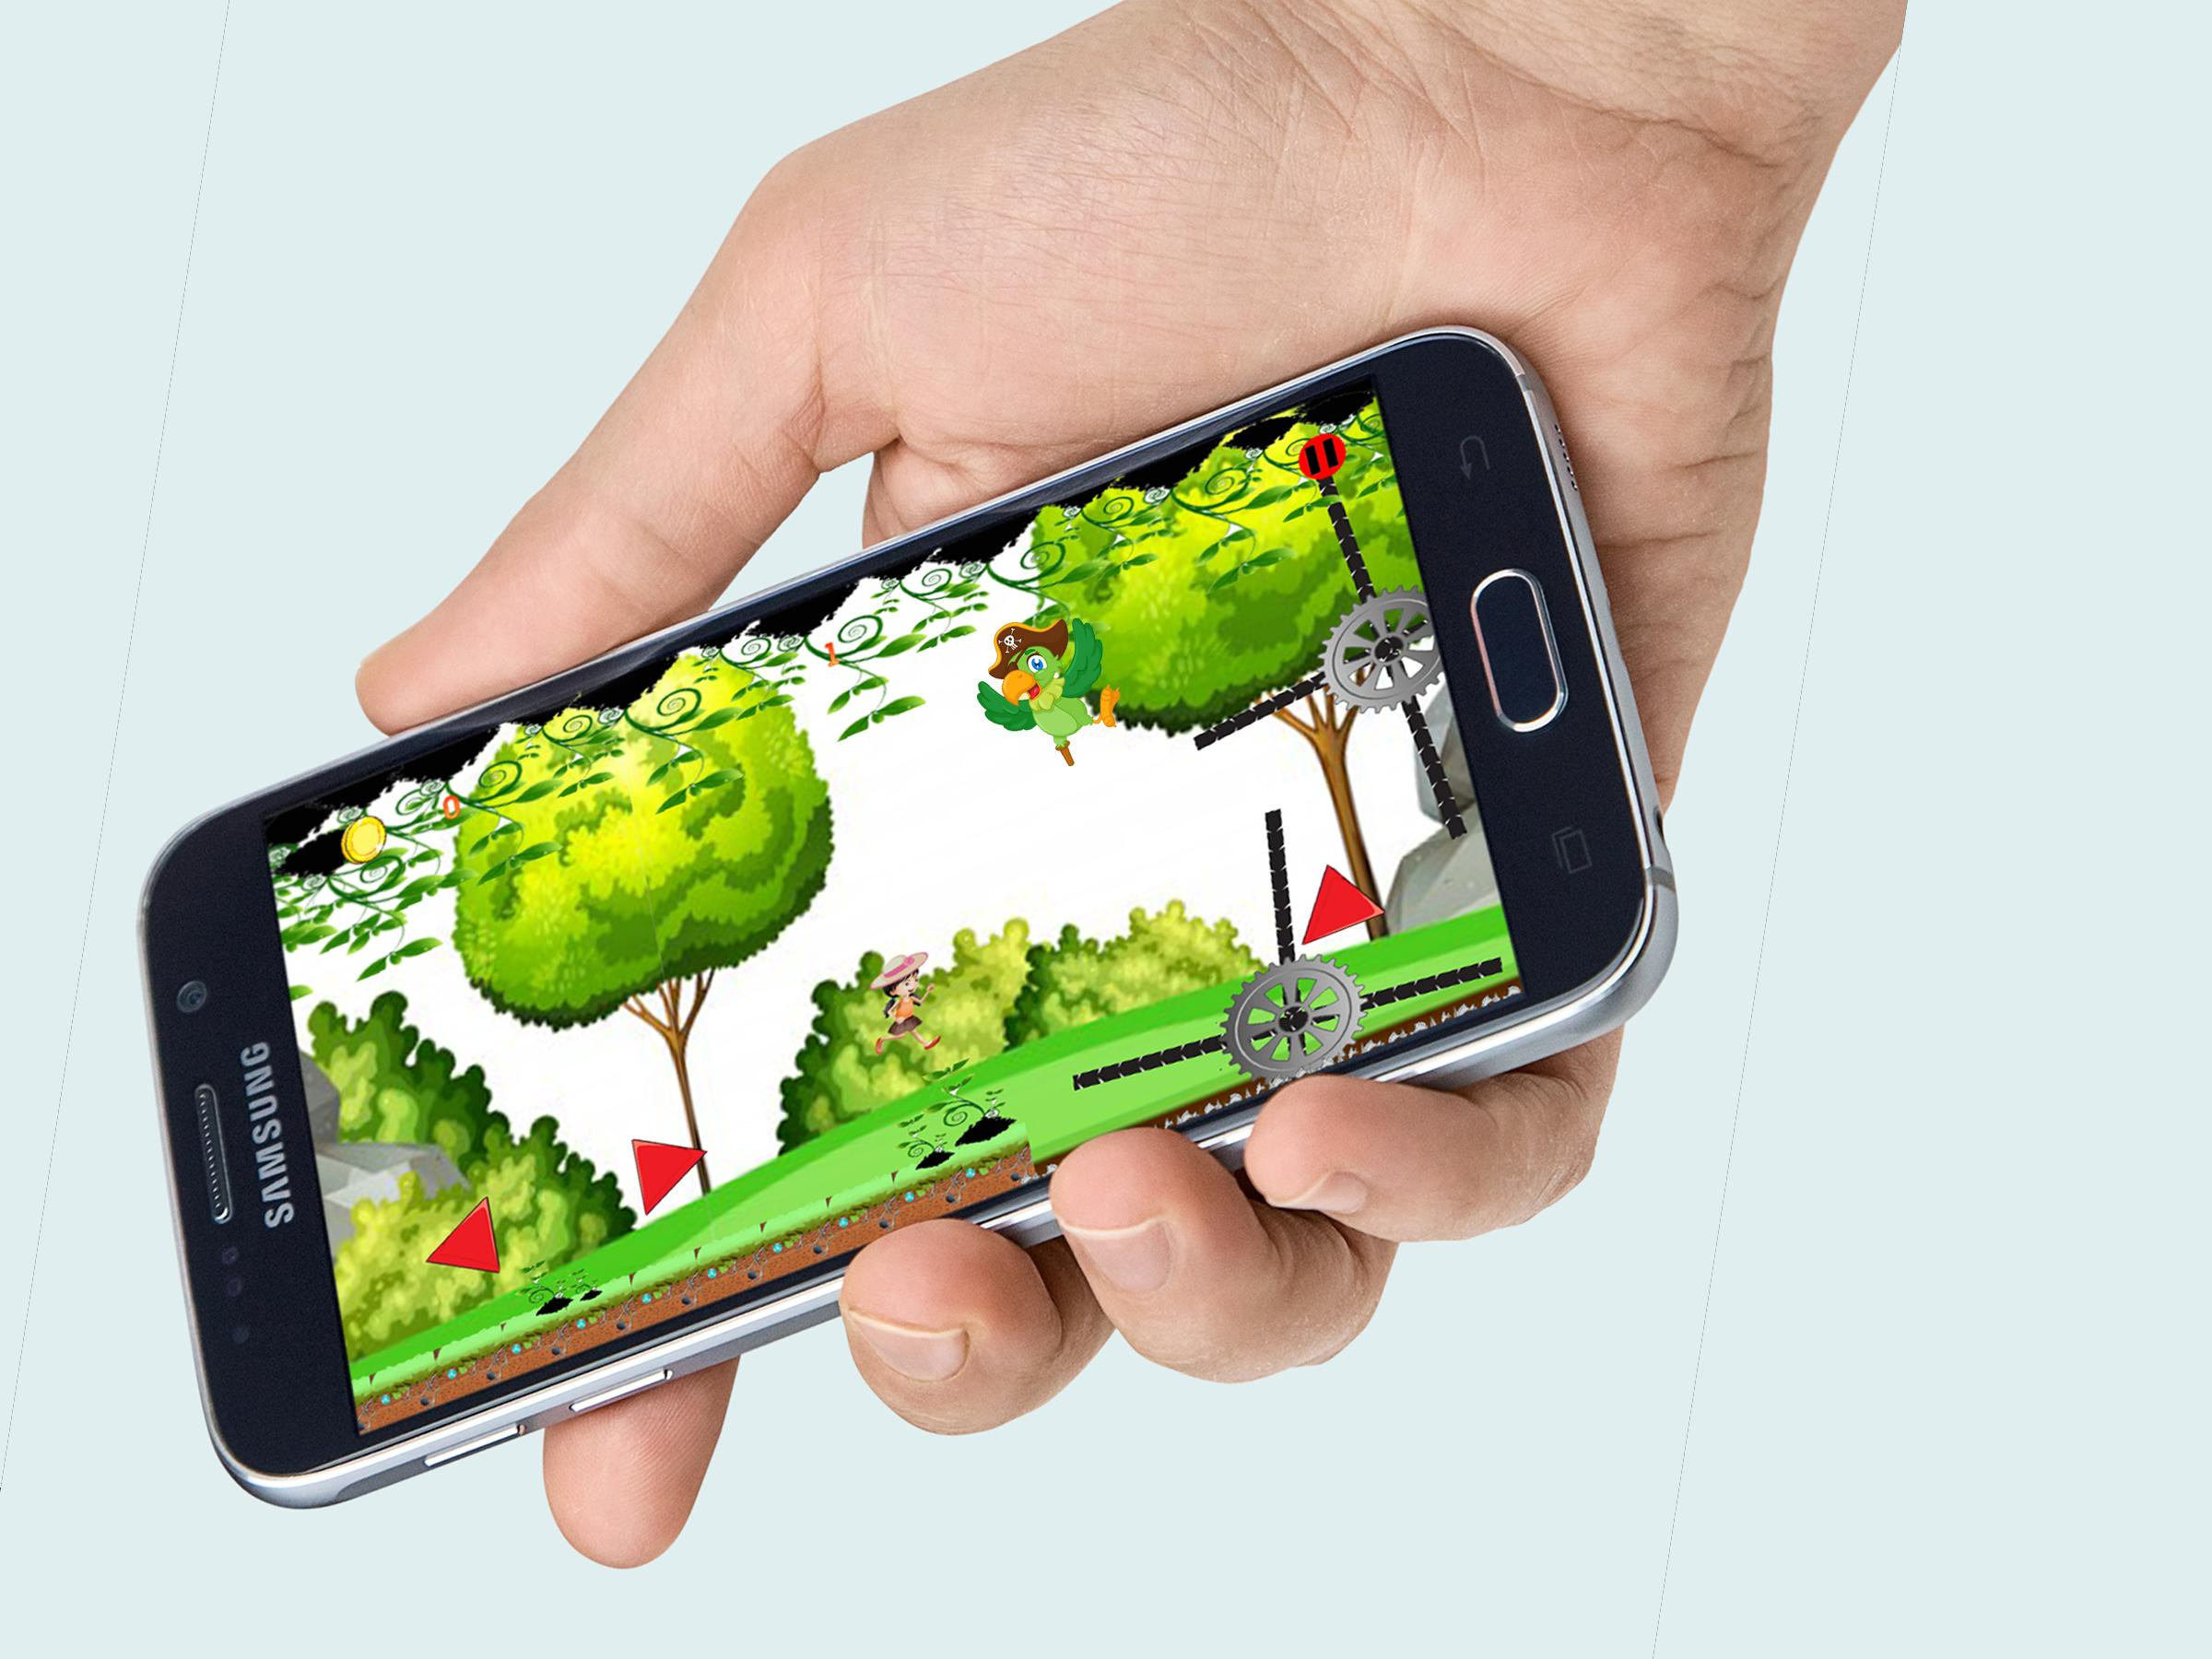 Jeux : Aventure Sally Gratuit For Android - Apk Download à Jeux De Memory Gratuit 